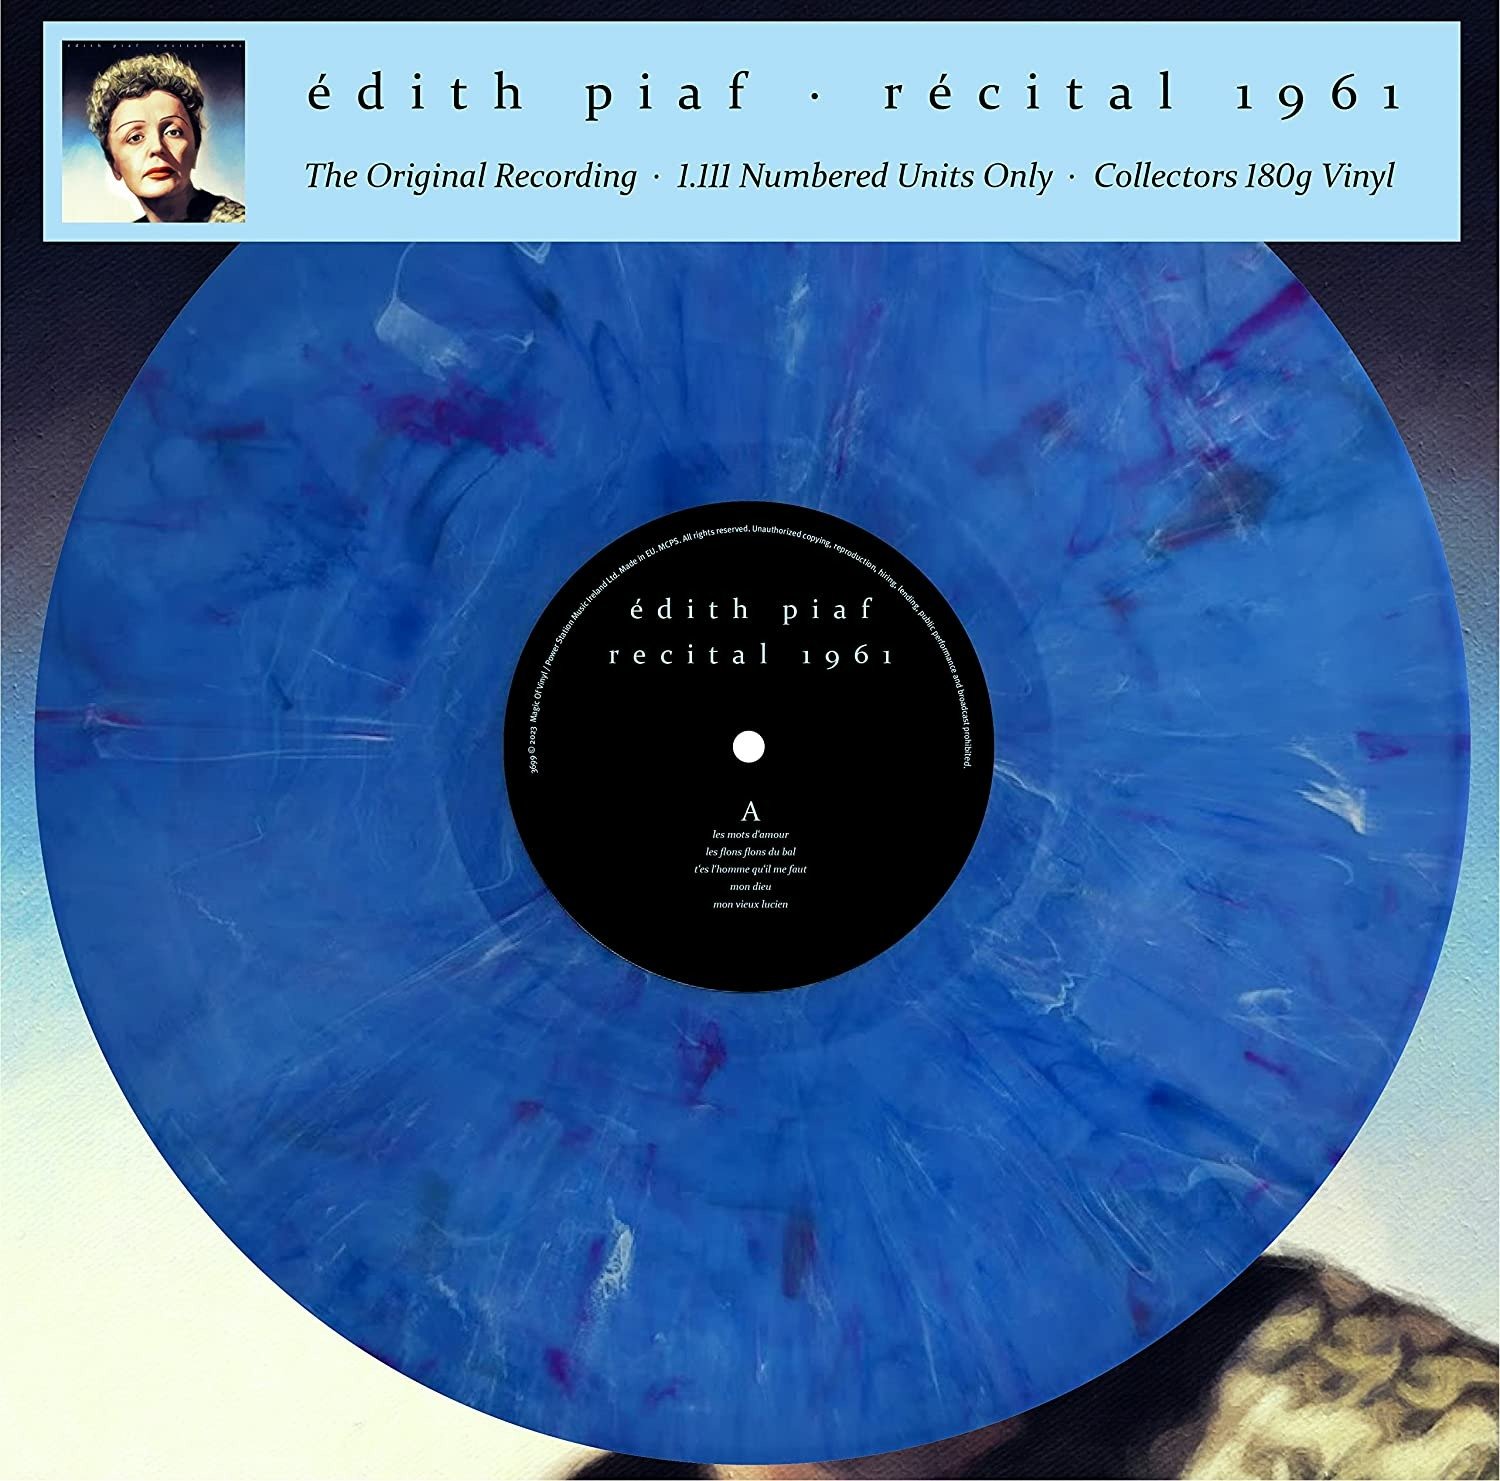 CD Shop - PIAF EDITH RECITAL 1961